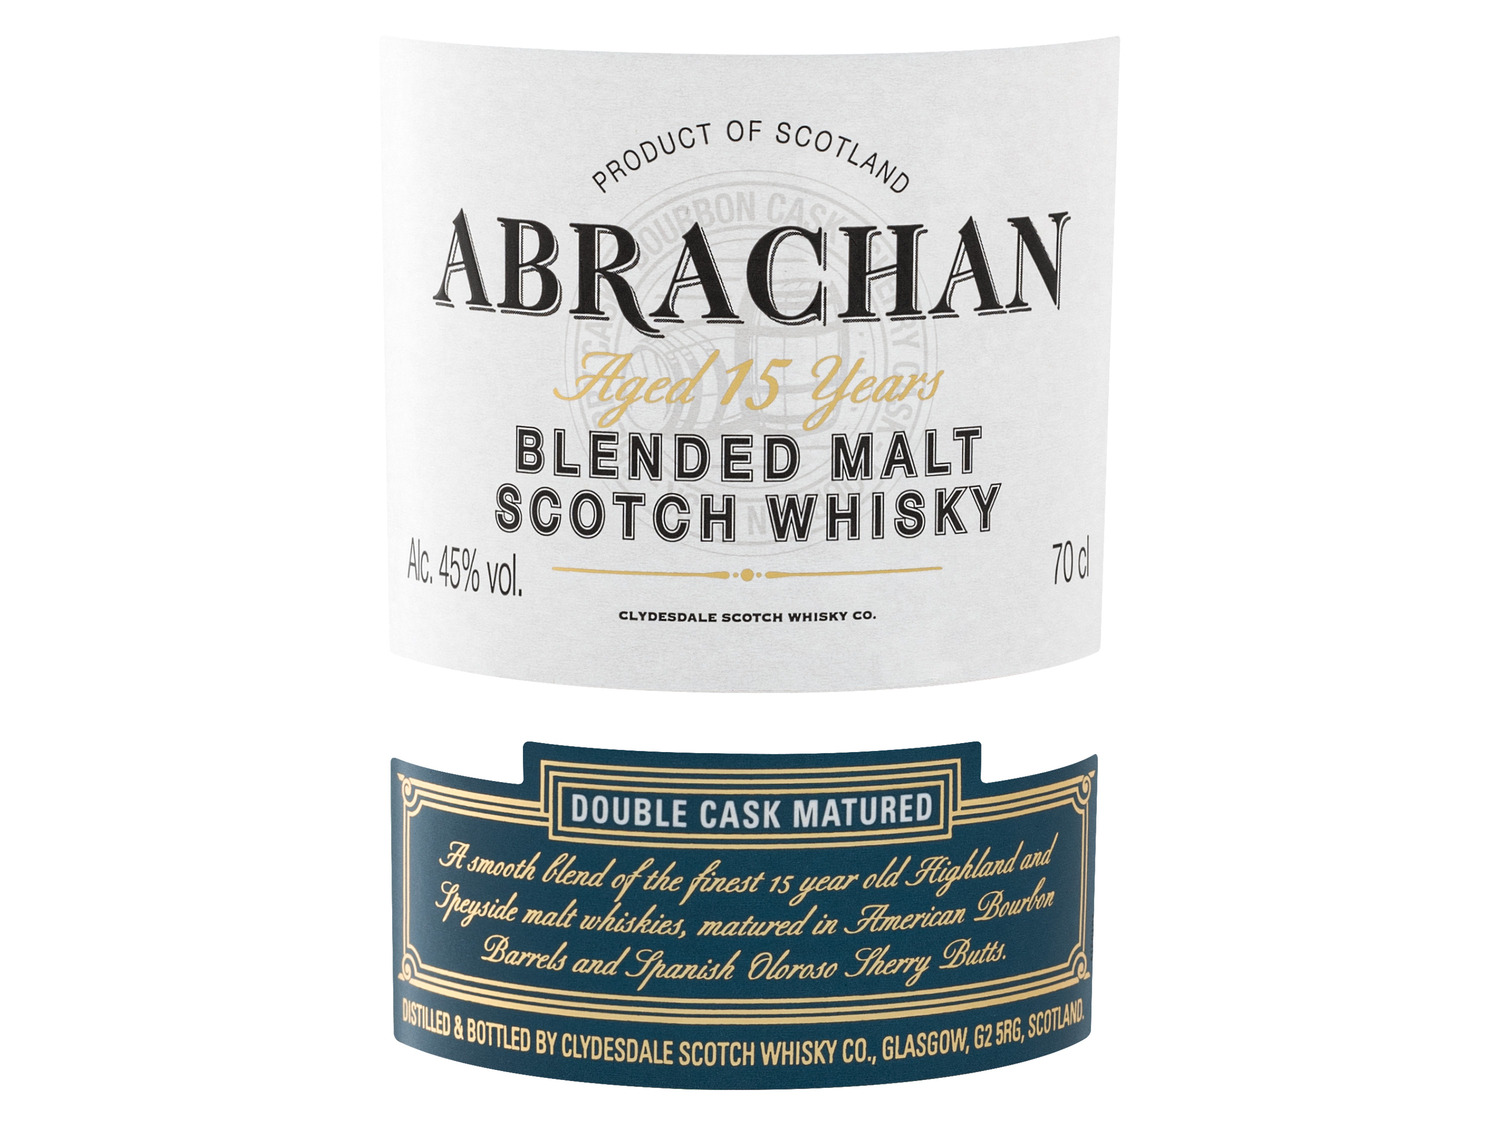 Abrachan Double Cask Matured Blended Malt Scotch Whisk…